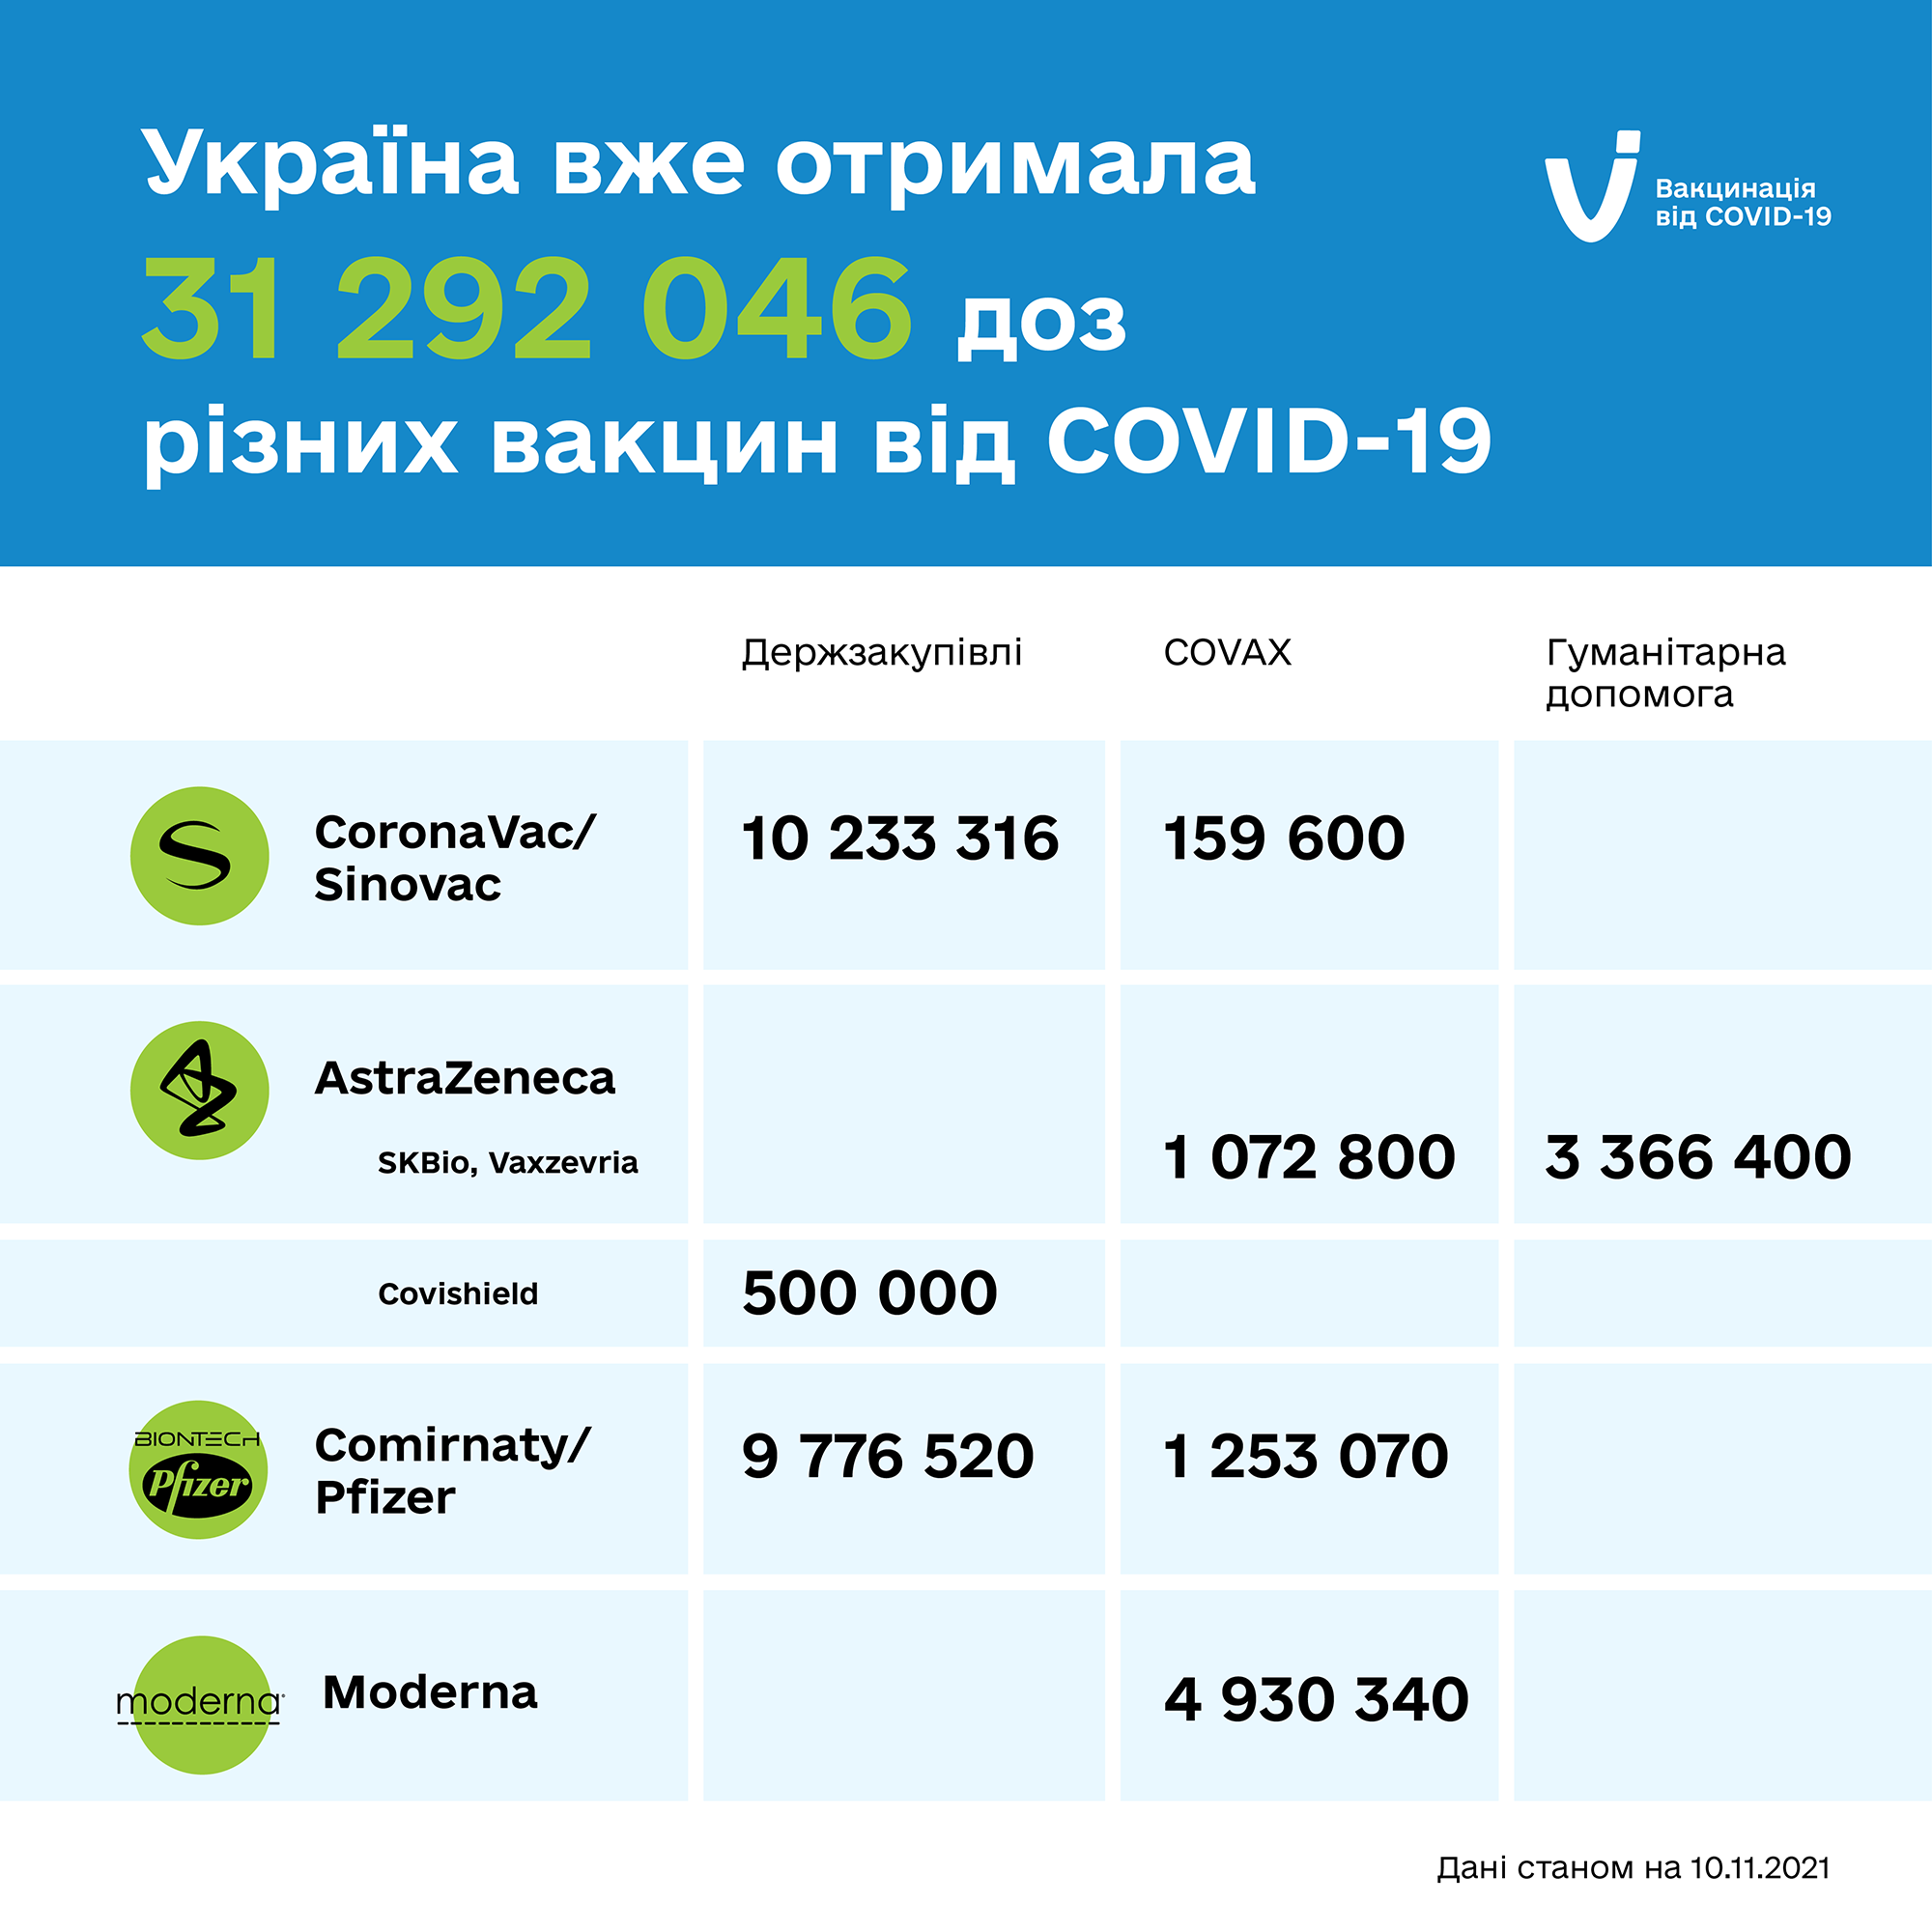 В МОЗ рассказали, сколько вакцин от коронавируса уже получила Украина. Скриншот из фейсбука